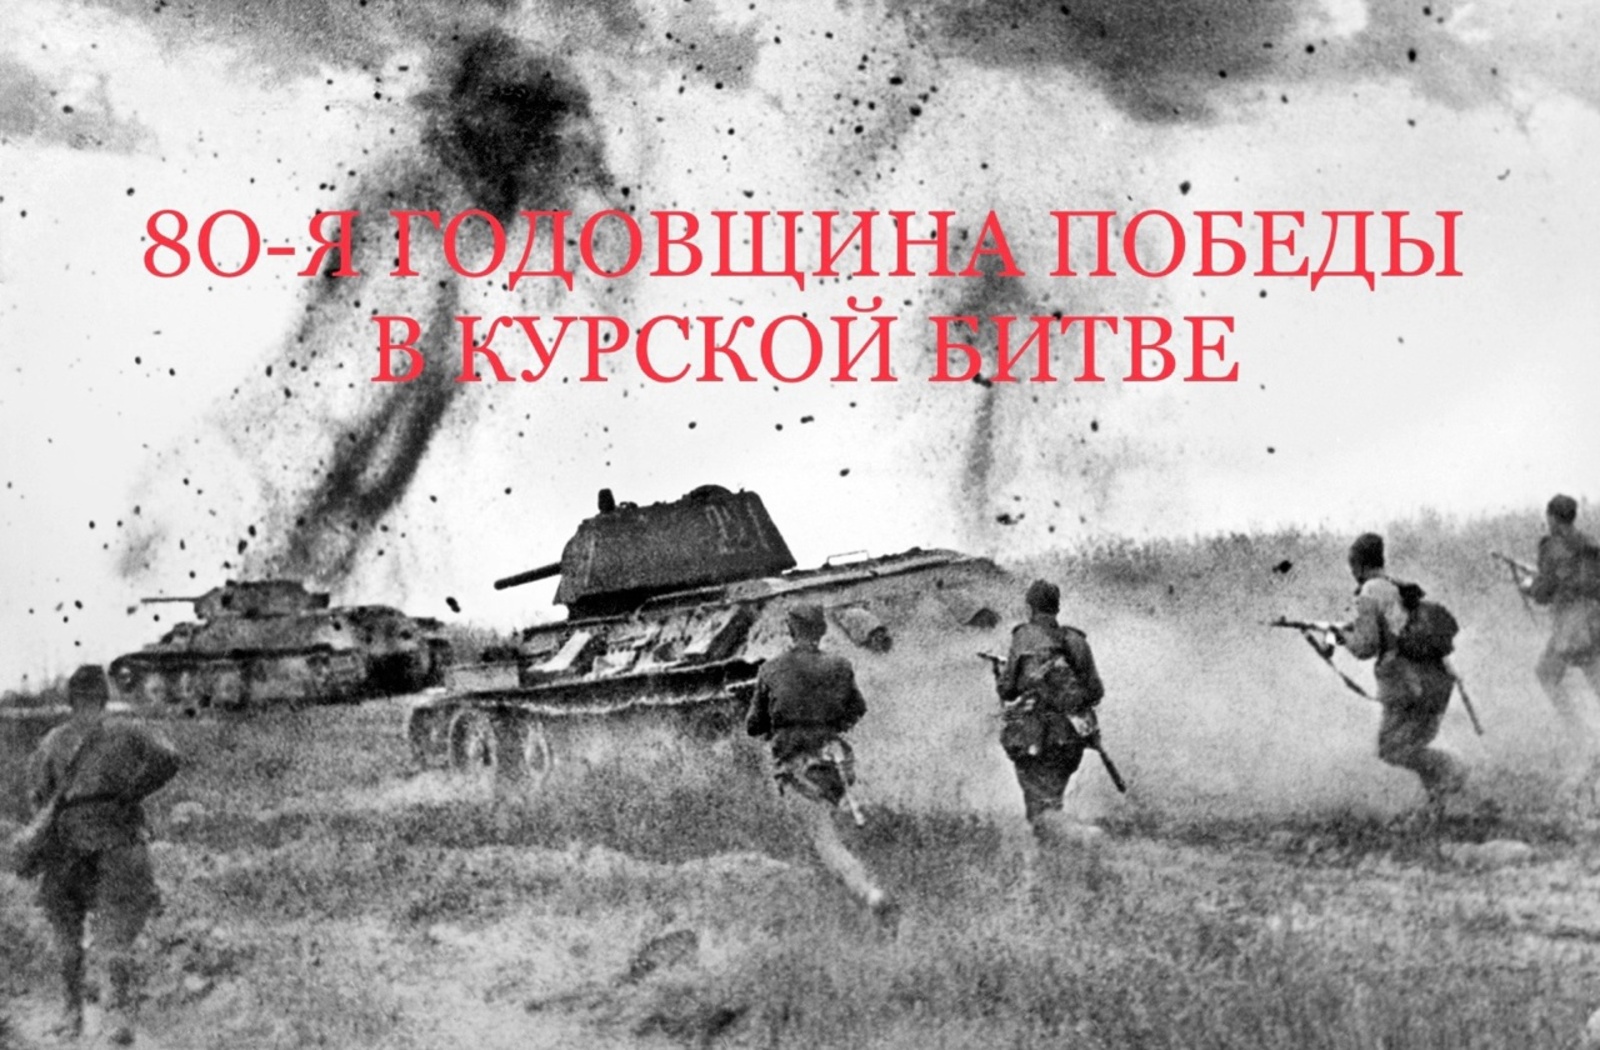 Сегодня — День воинской славы России, важнейшая дата в истории нашей страны.